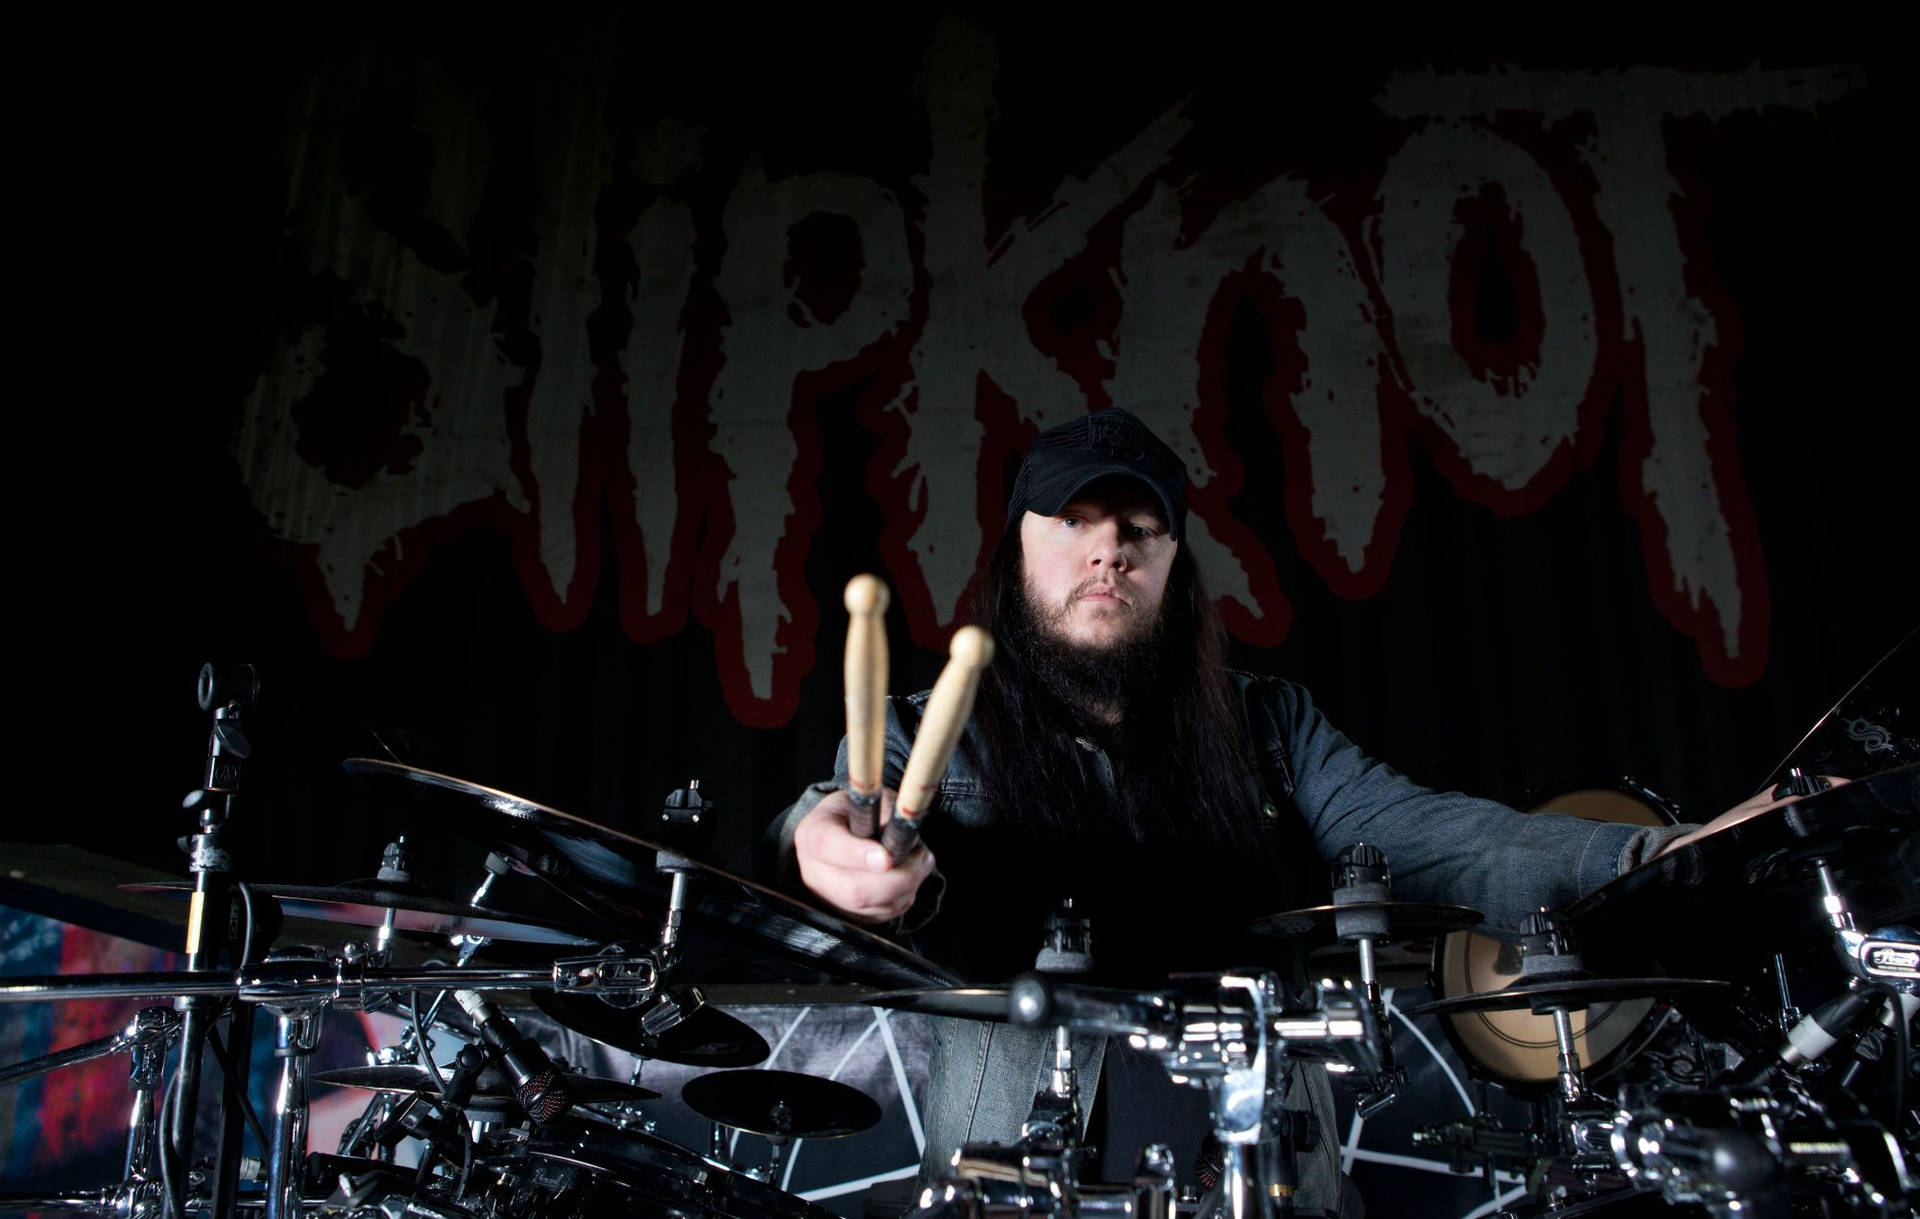 Joey Jordison Slipknot Drummer